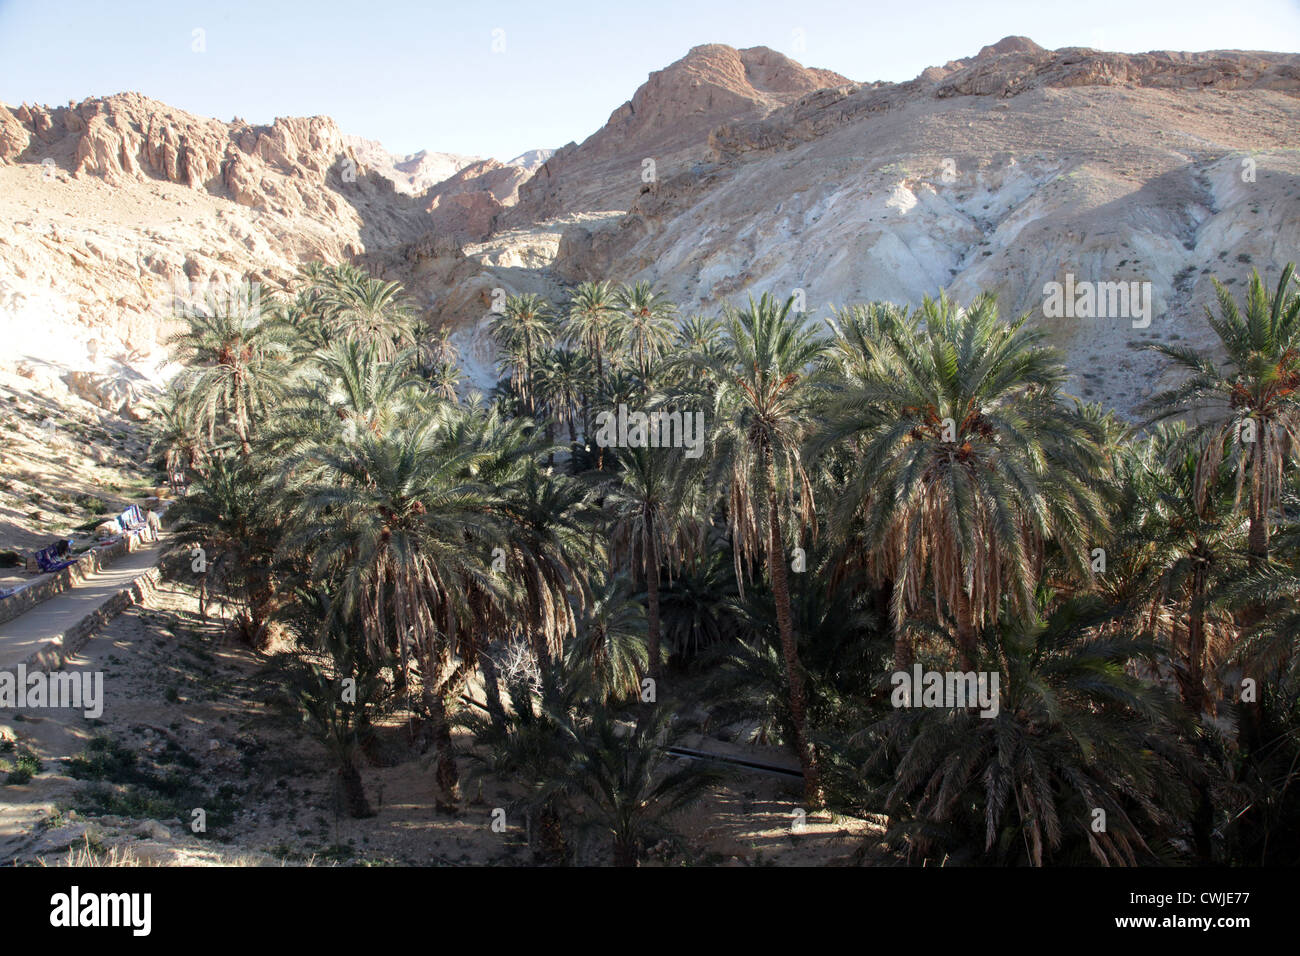 Mountain oasis Chebika at border of Sahara, Tunisia Stock Photo